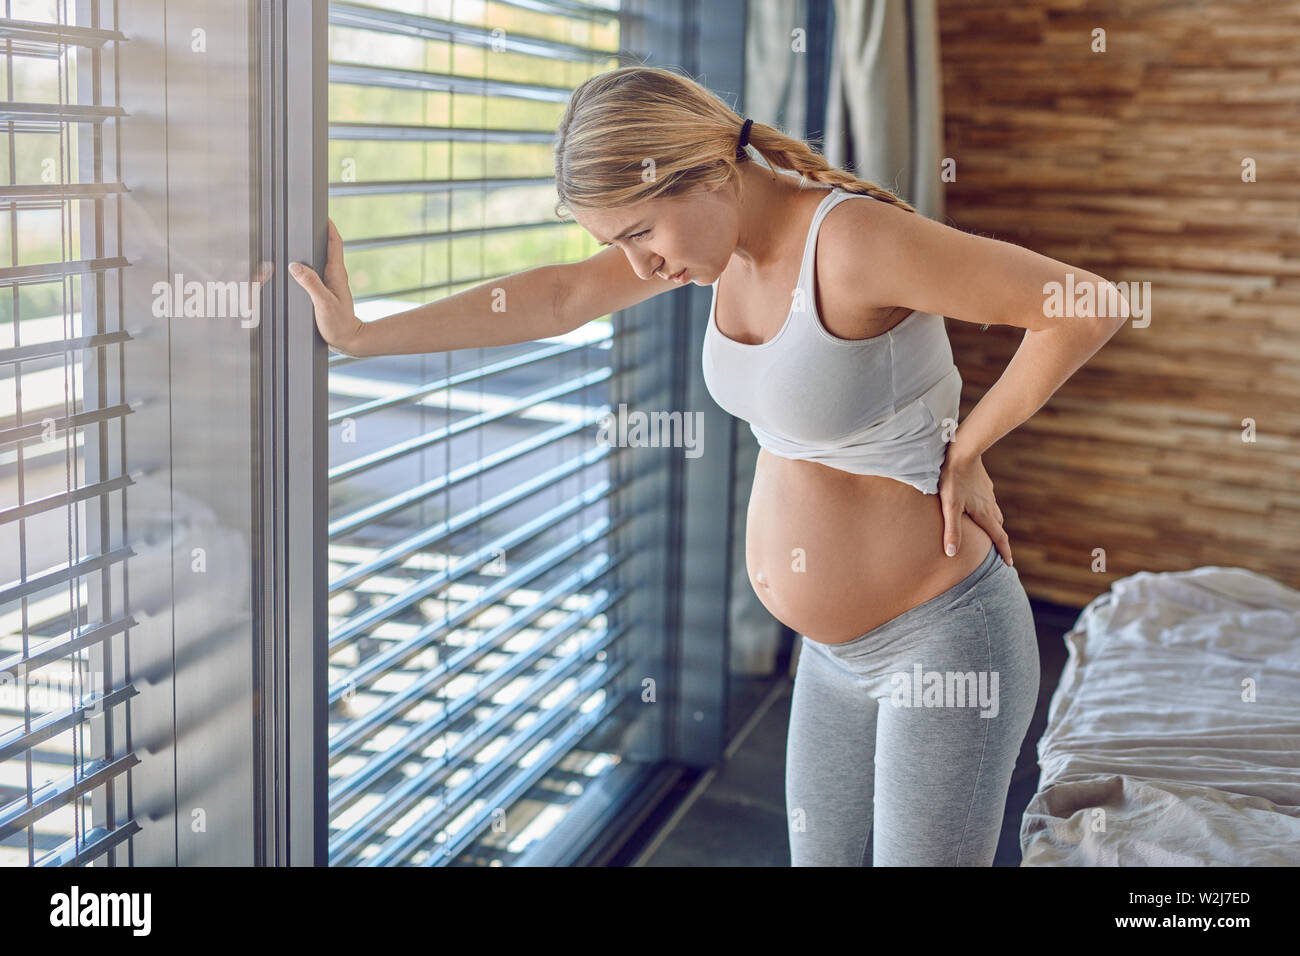 Schwangere junge Frau leiden mit Rückenschmerzen lehnte sich auf ihr Bett, Ihr unterer Rücken umklammert Mit einem gequälten Ausdruck Stockfoto